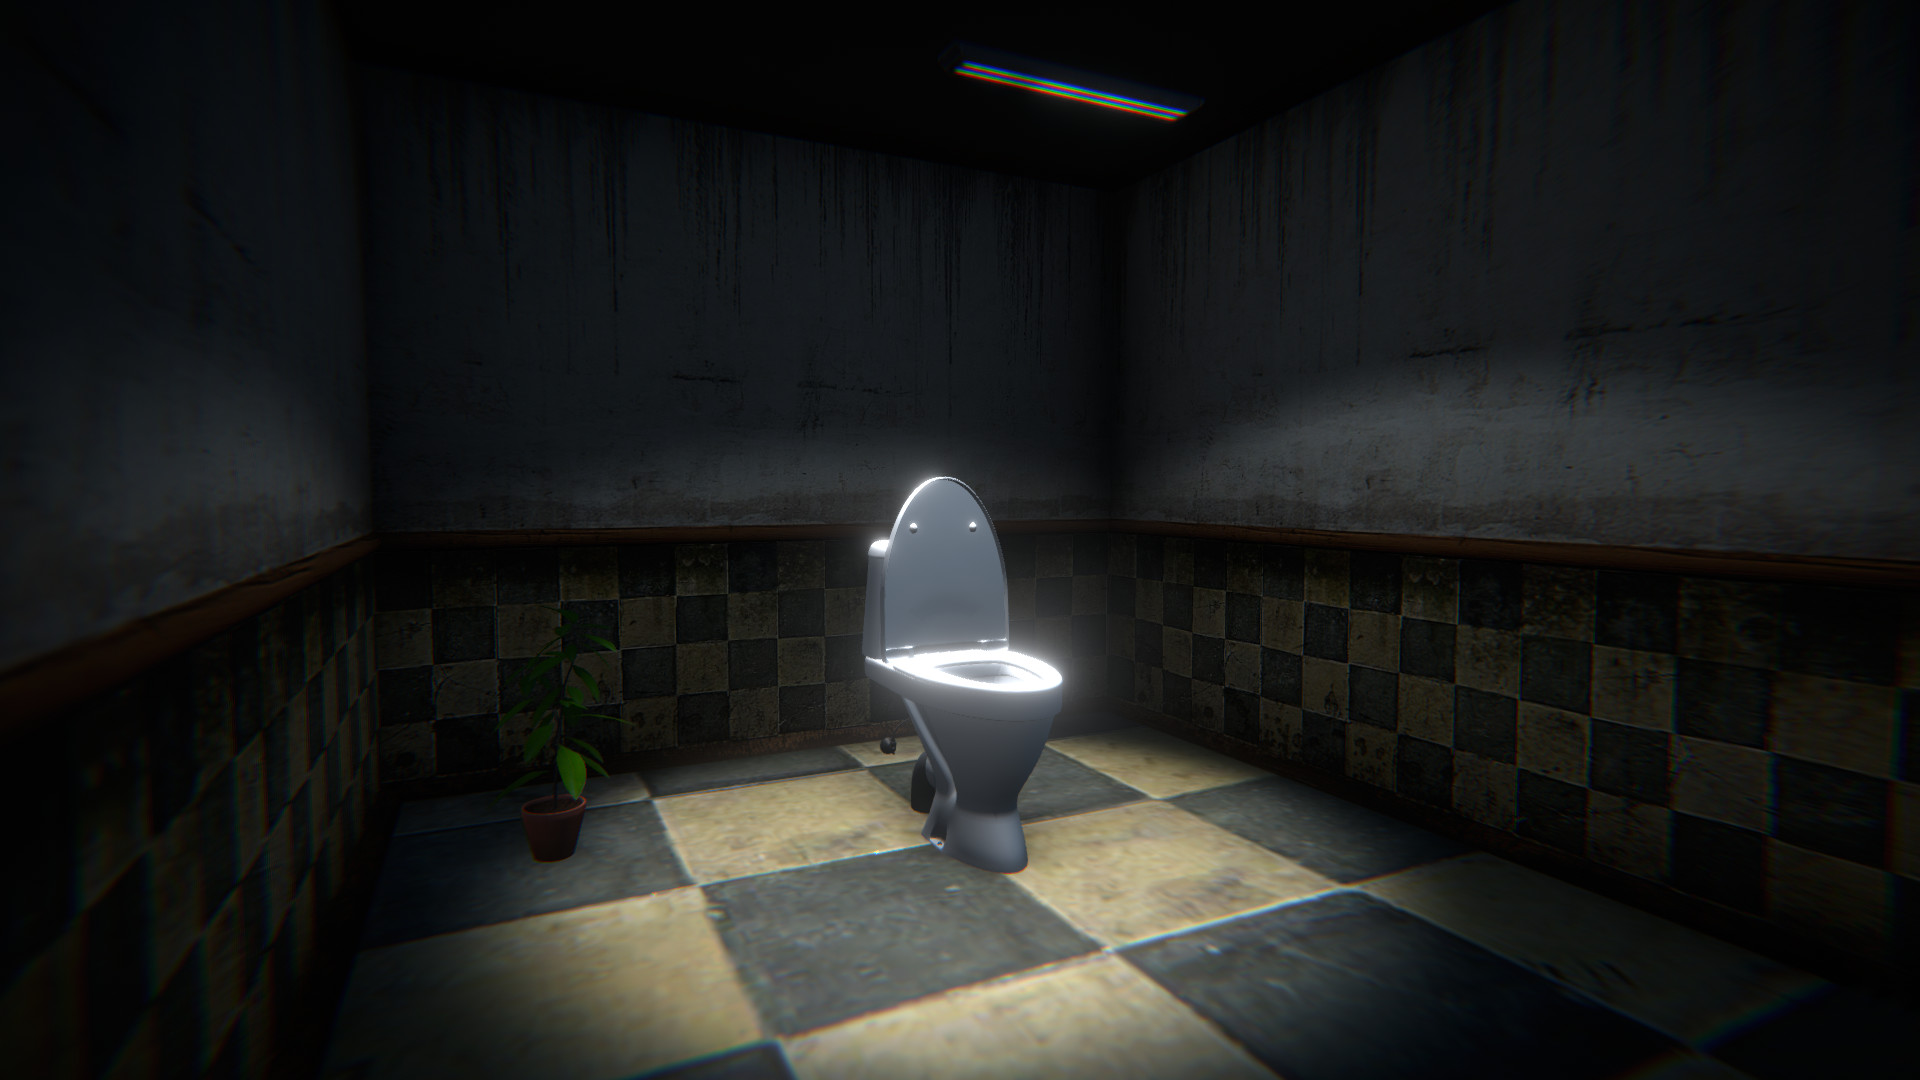 Toilet Run on Steam